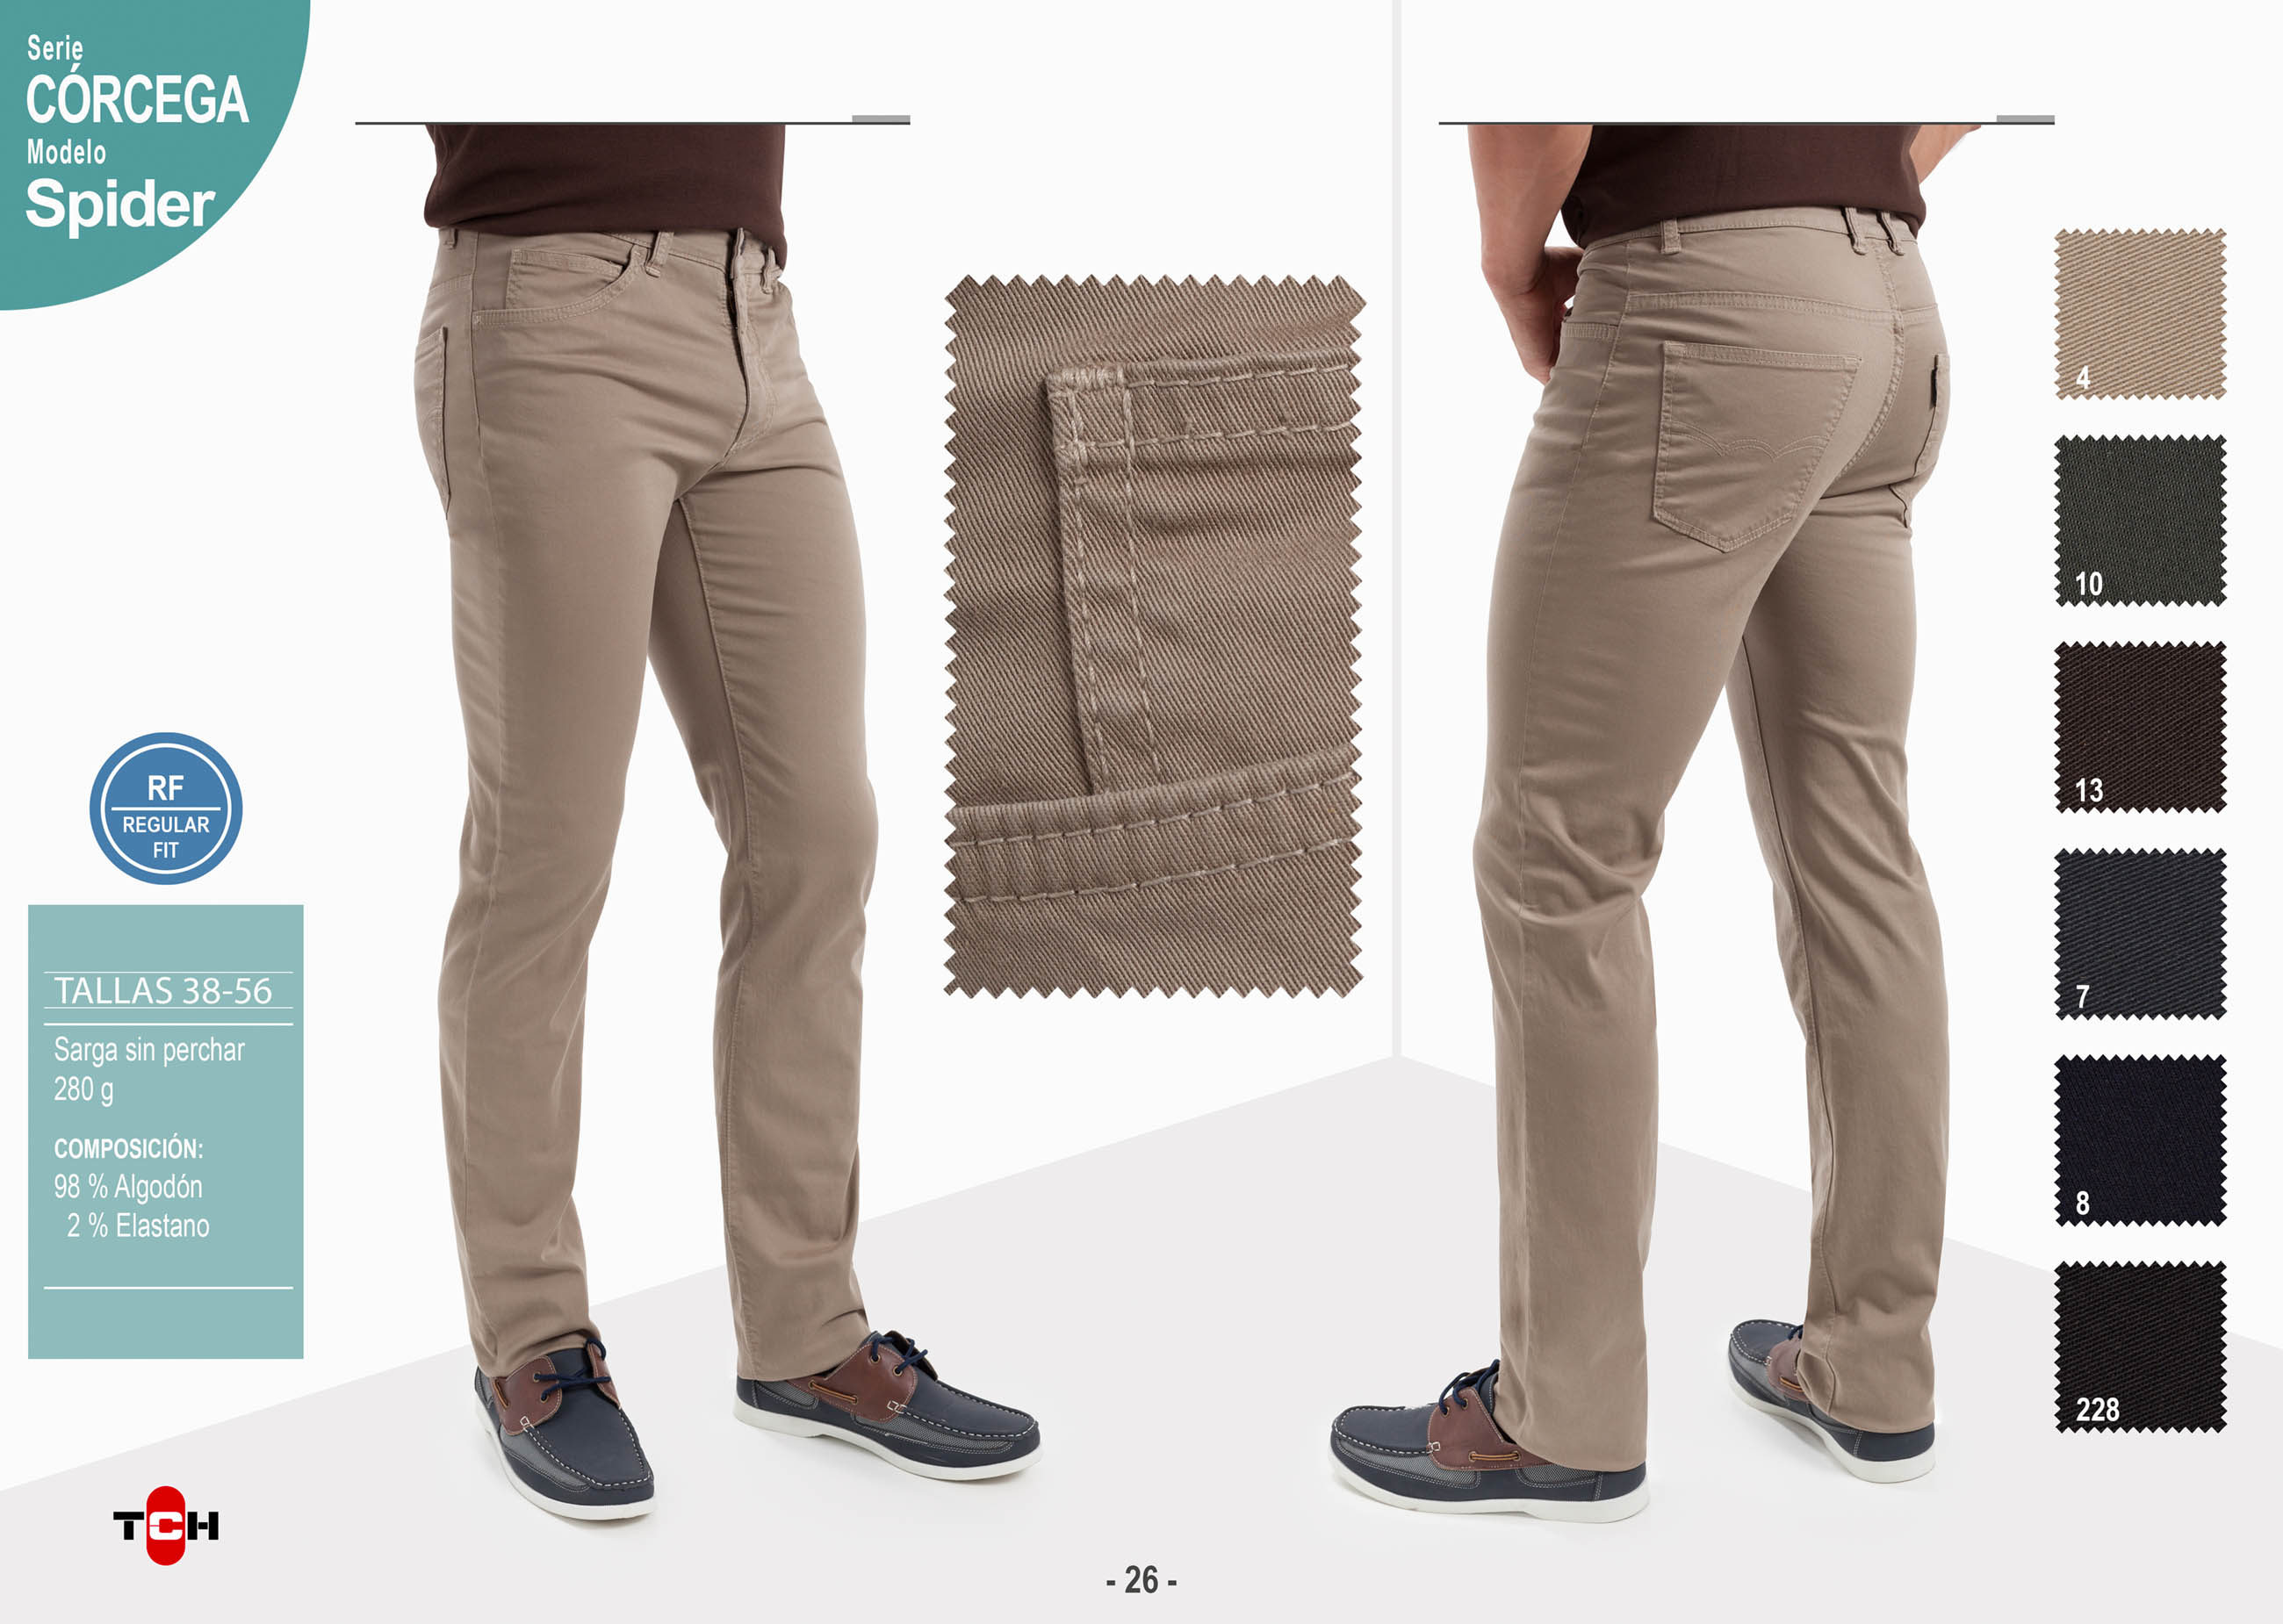 Comprar Pantalón TCH 5 bolsillos fabricado en algodón con lycra en España